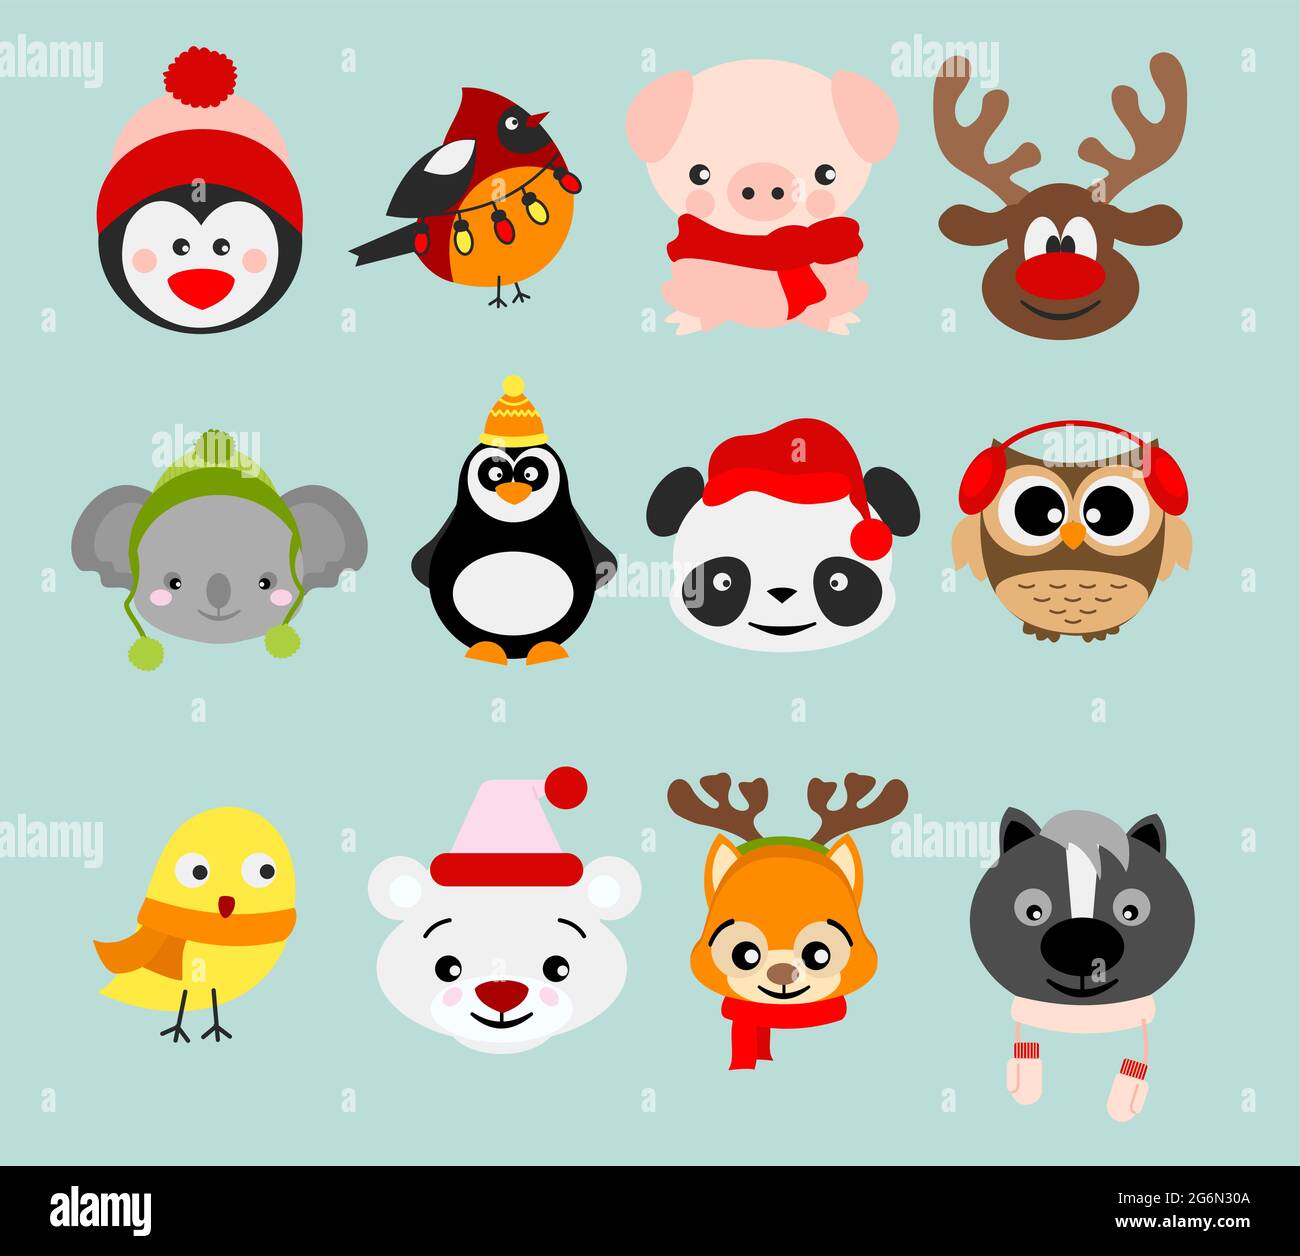 Vektor-Illustration Set von Winter niedlichen Tieren in Weihnachten Kostüme und Elemente. Glücklich im Winter und weihnachten Tiere in Cartoon-Flat-Stil. Stock Vektor